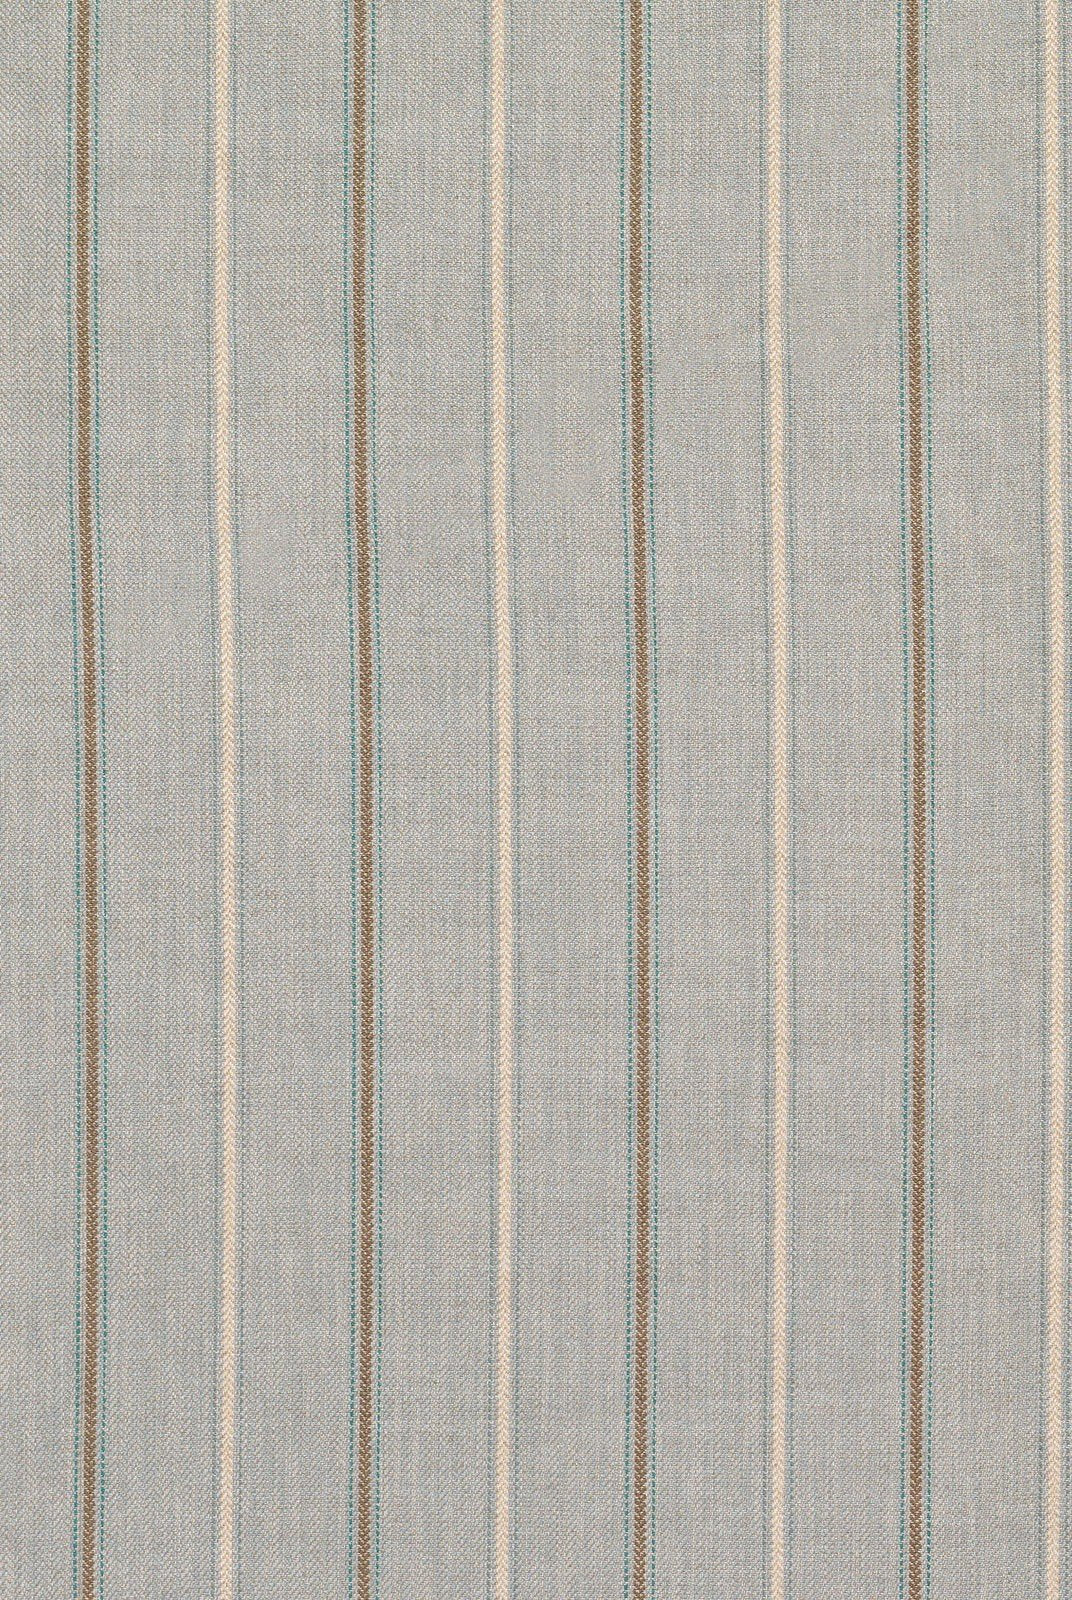 Braemar Strome Aqua/Taupe/Cream Fabric - NCF4111-01